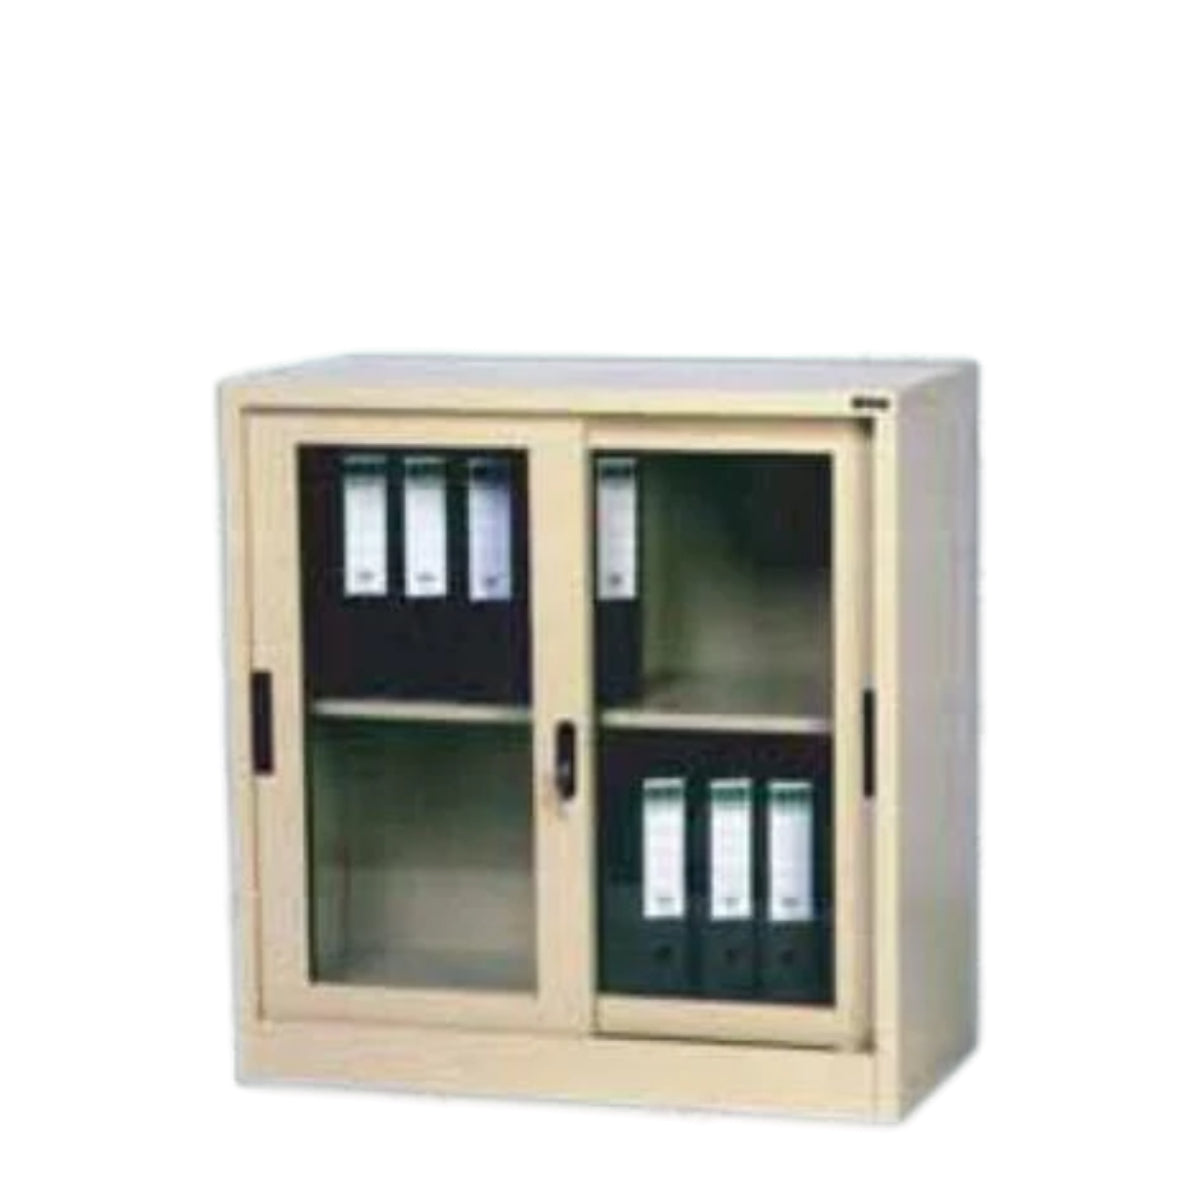 Rexel Filing Cupboard, 94x90.1x44.5 cm, Sliding Glass Door, Beige